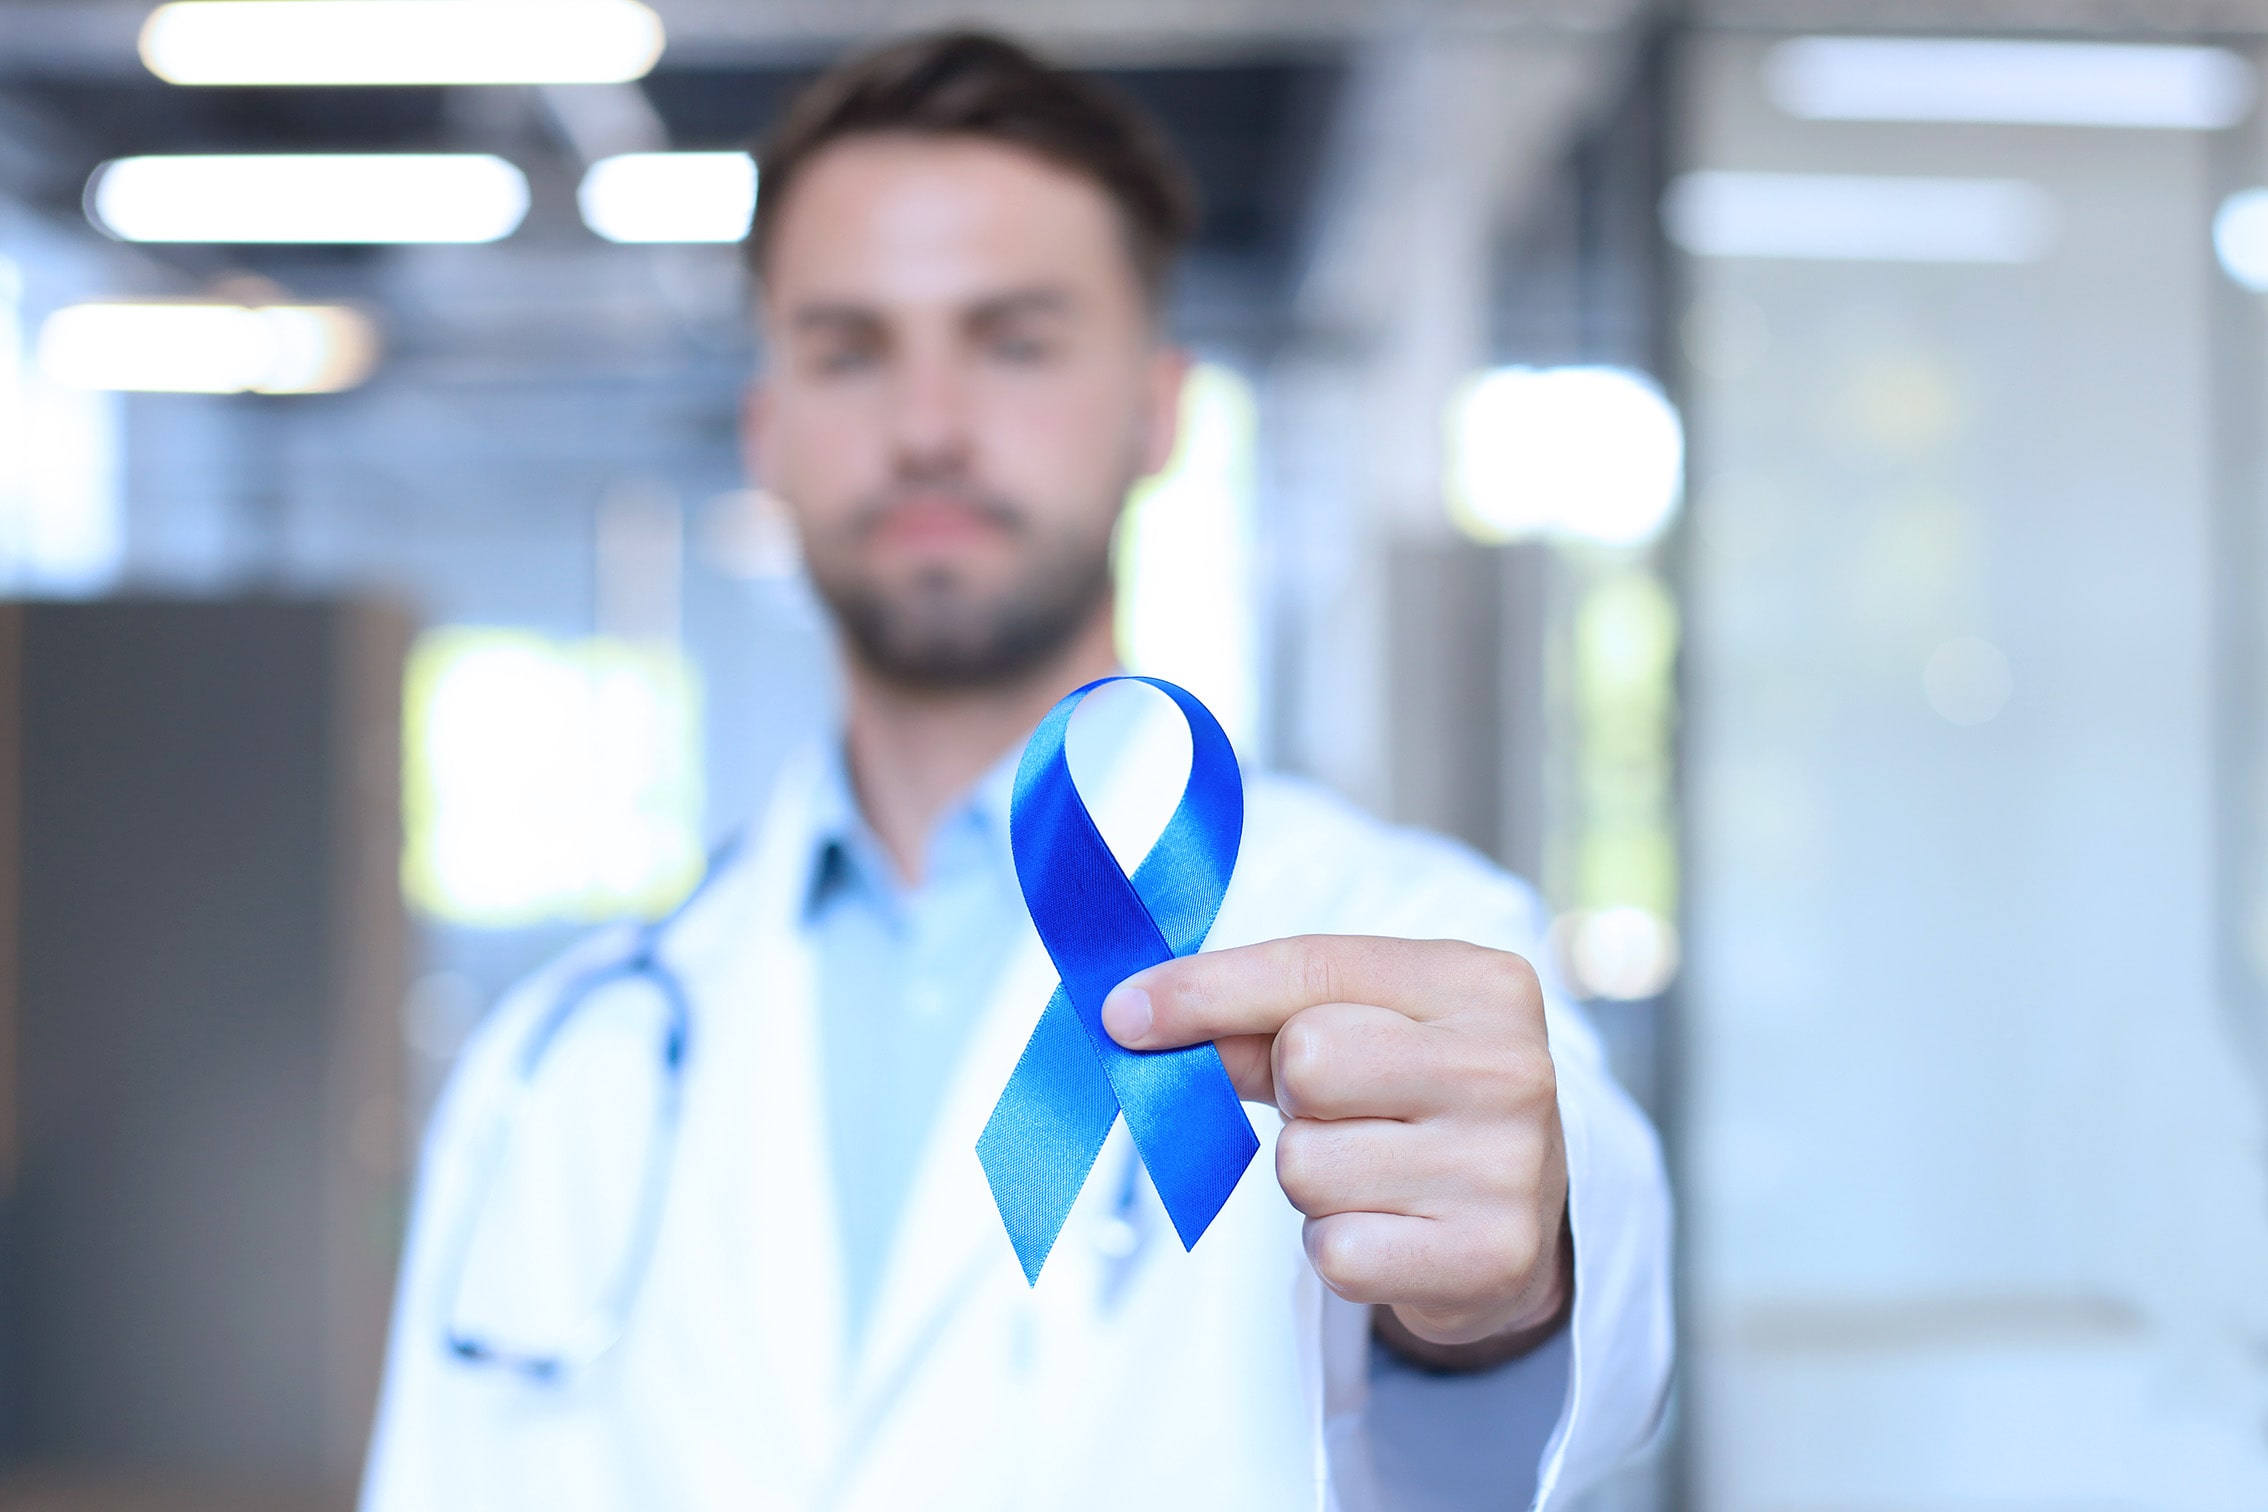 Niebieski Listopad: Rak prostaty – objawy, leczenie, czynniki ryzyka